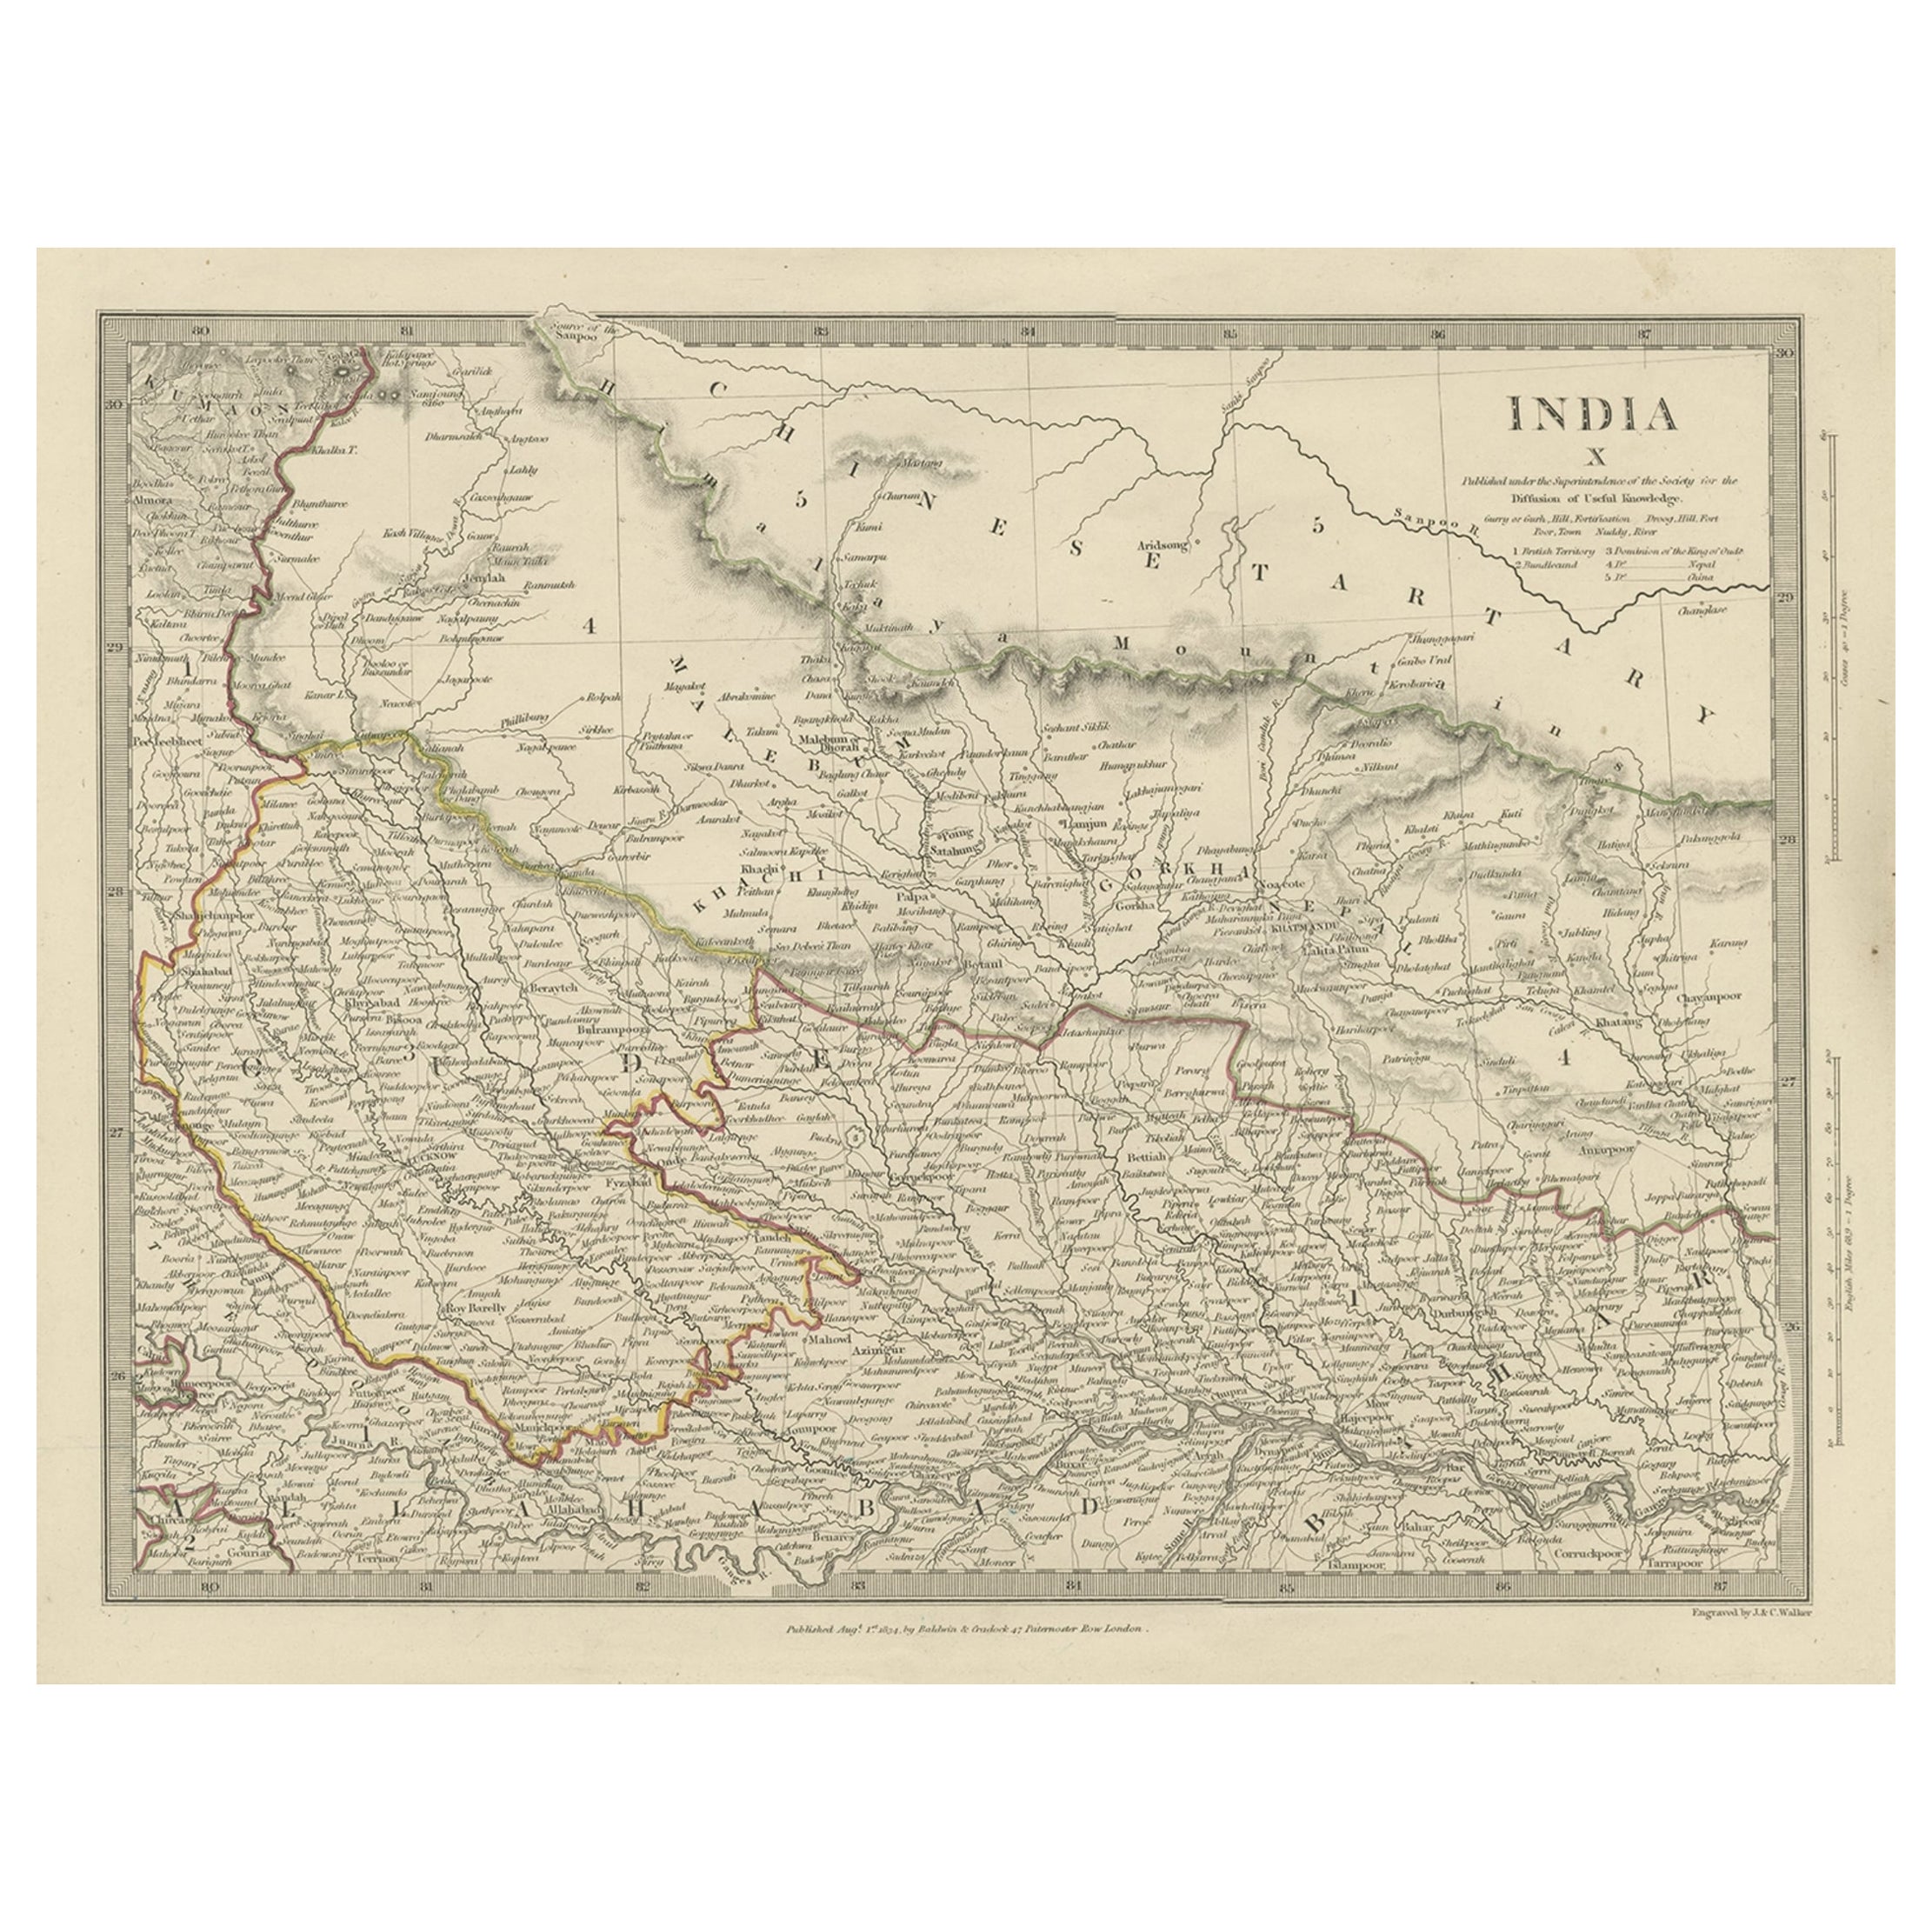 Original Antique Map of Part of the Bahar Region (India), 1834